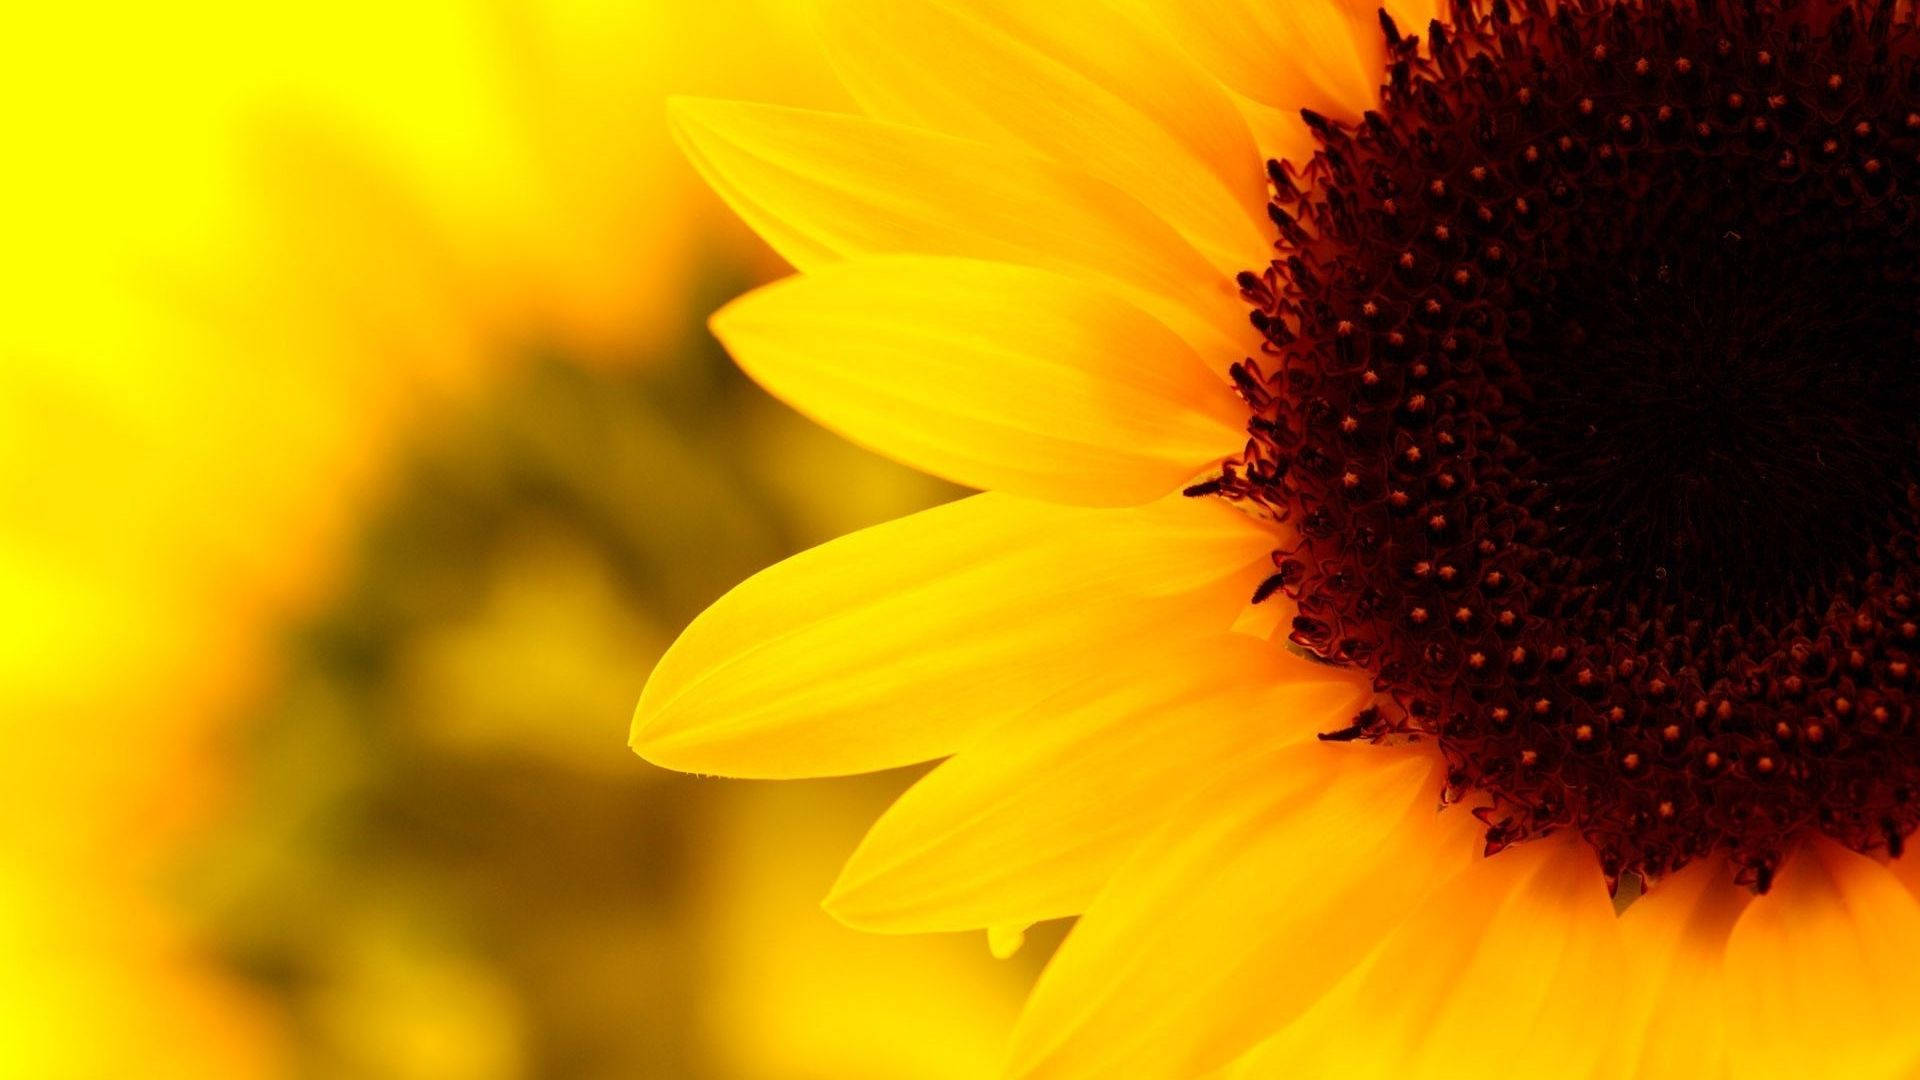 "Vibrant Sunflower Aesthetic - Reflecting Nature's Finest Artwork" Wallpaper